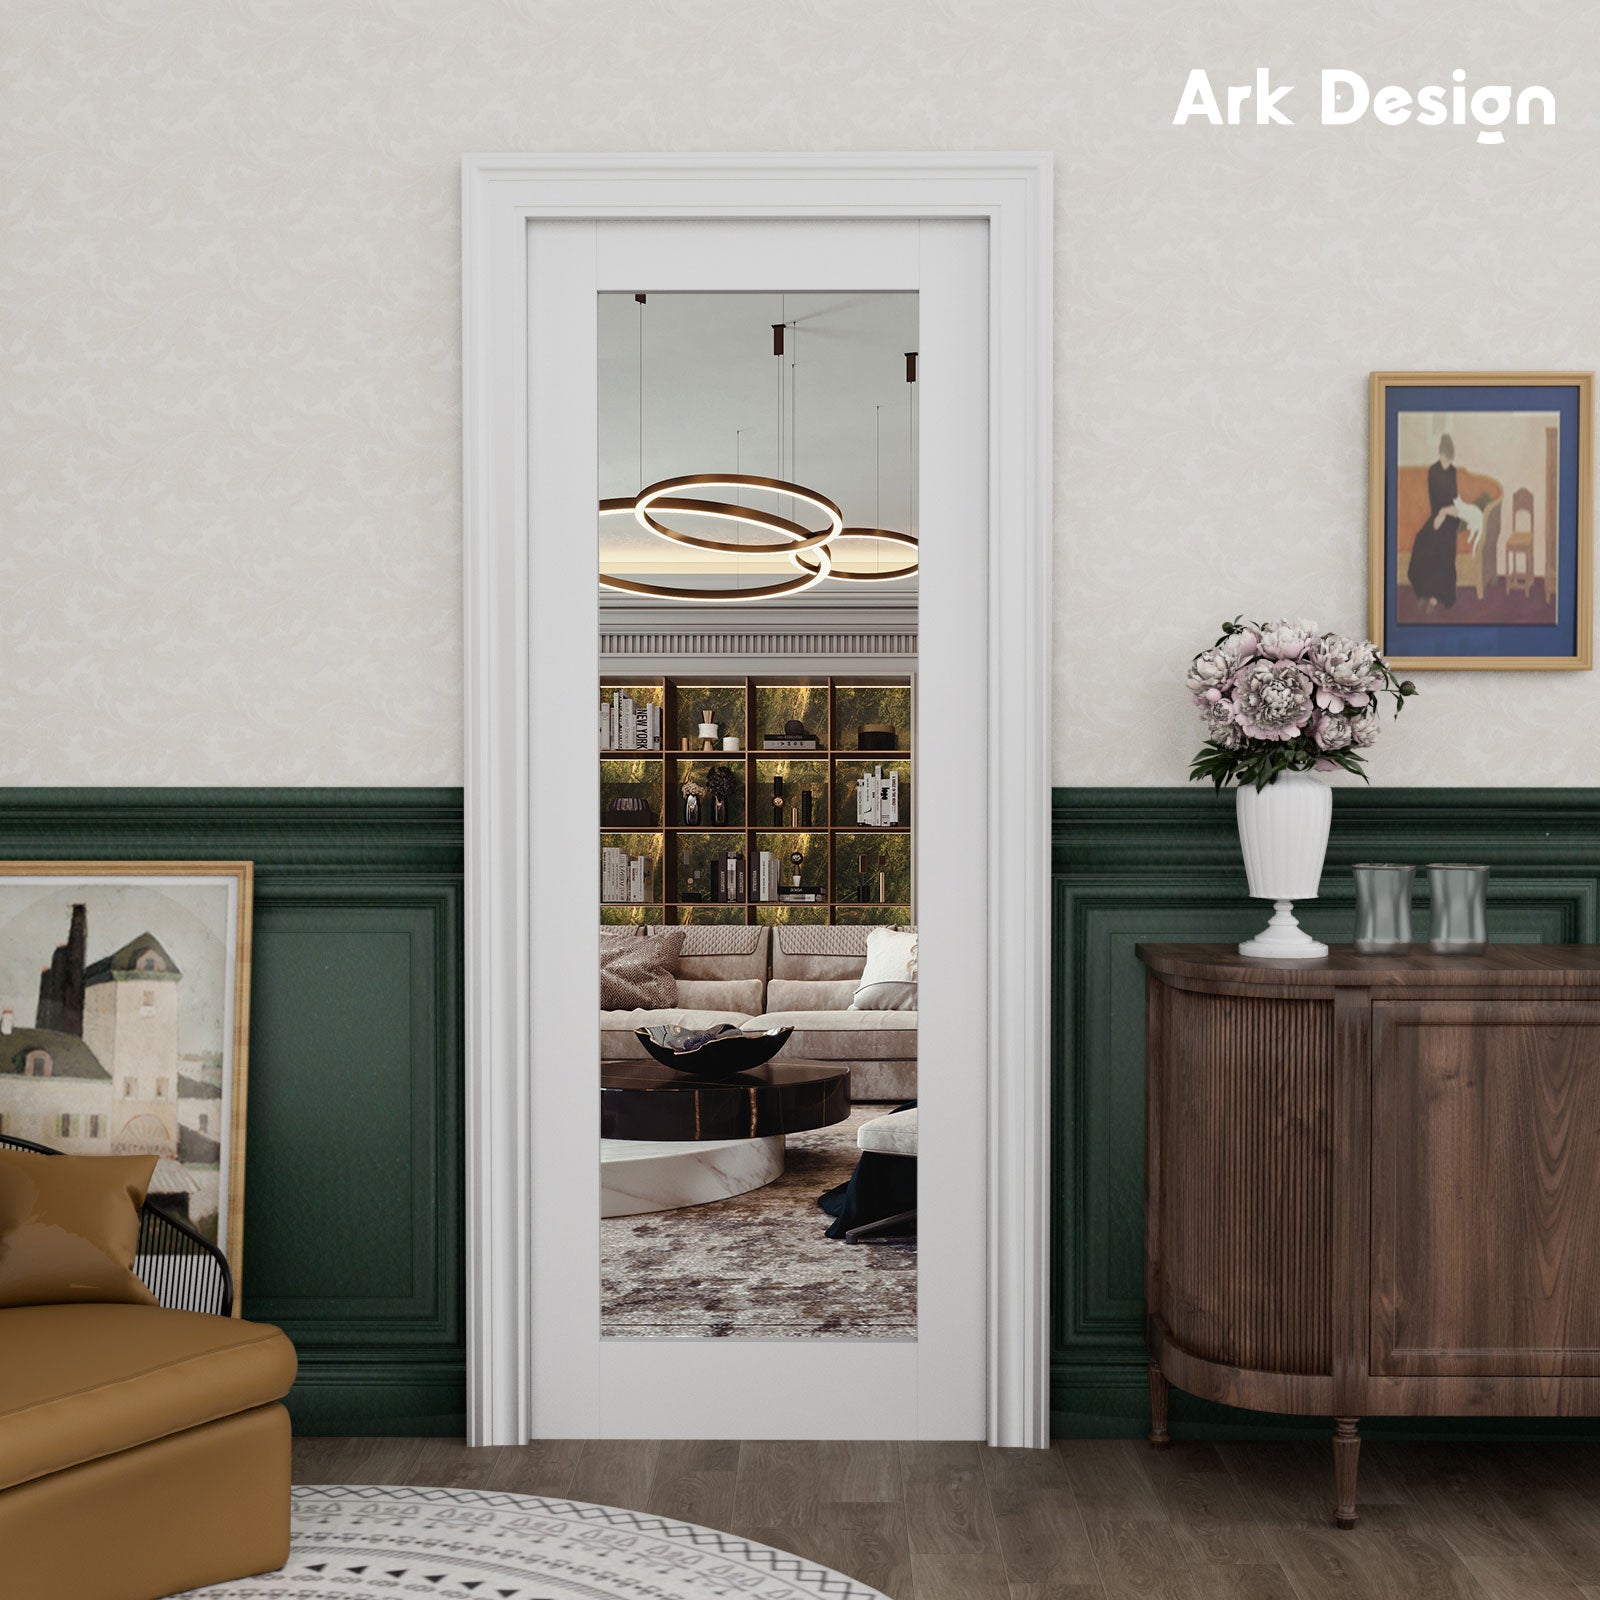 Mirrorred Pocket Door Ark Design